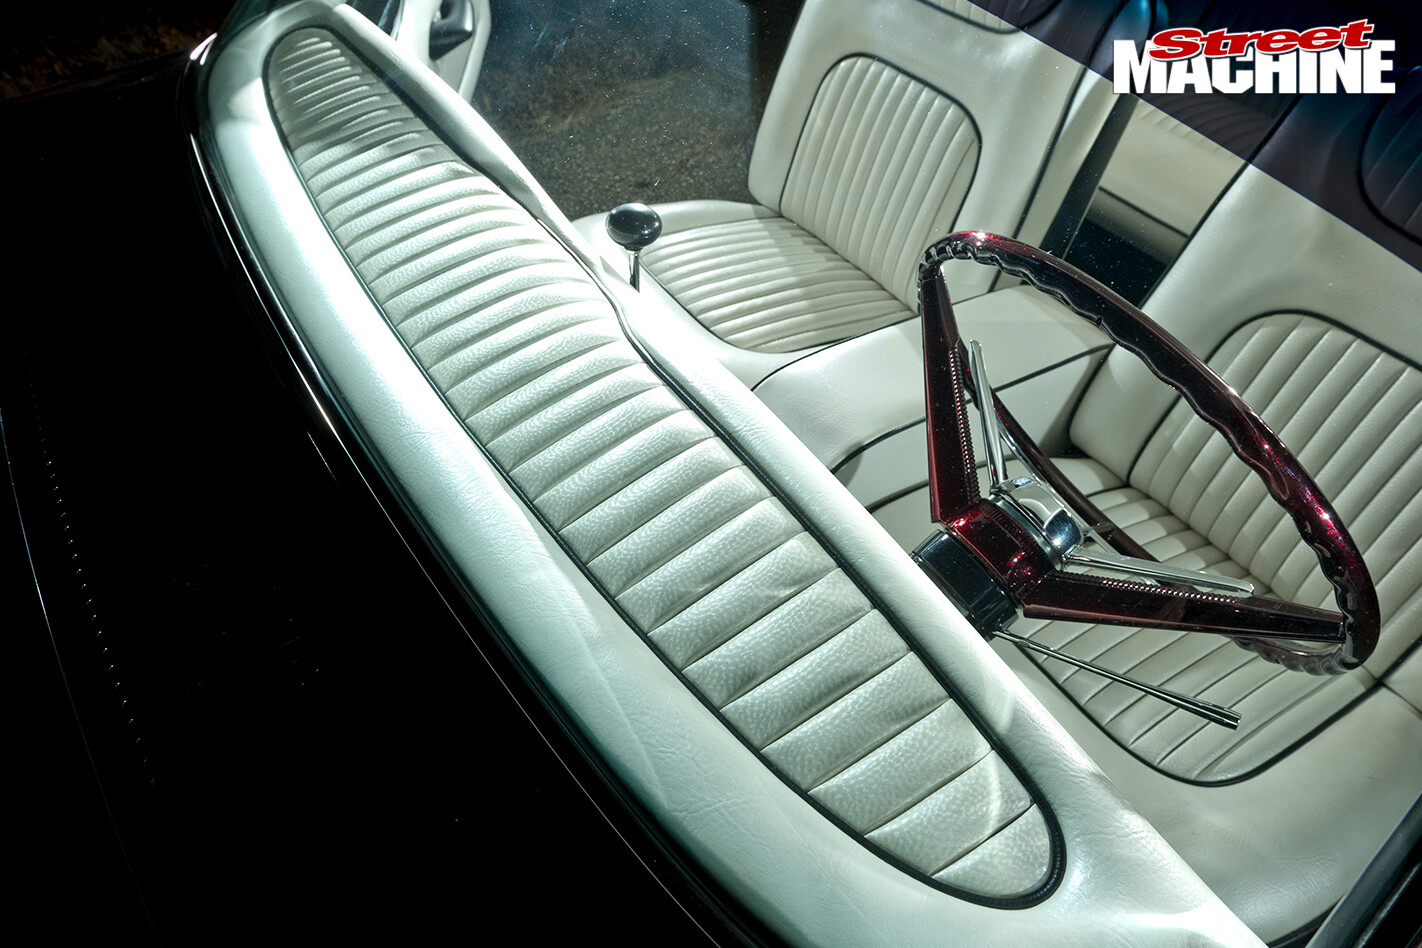 1961-Ford -Falcon -Wagon -interior -2